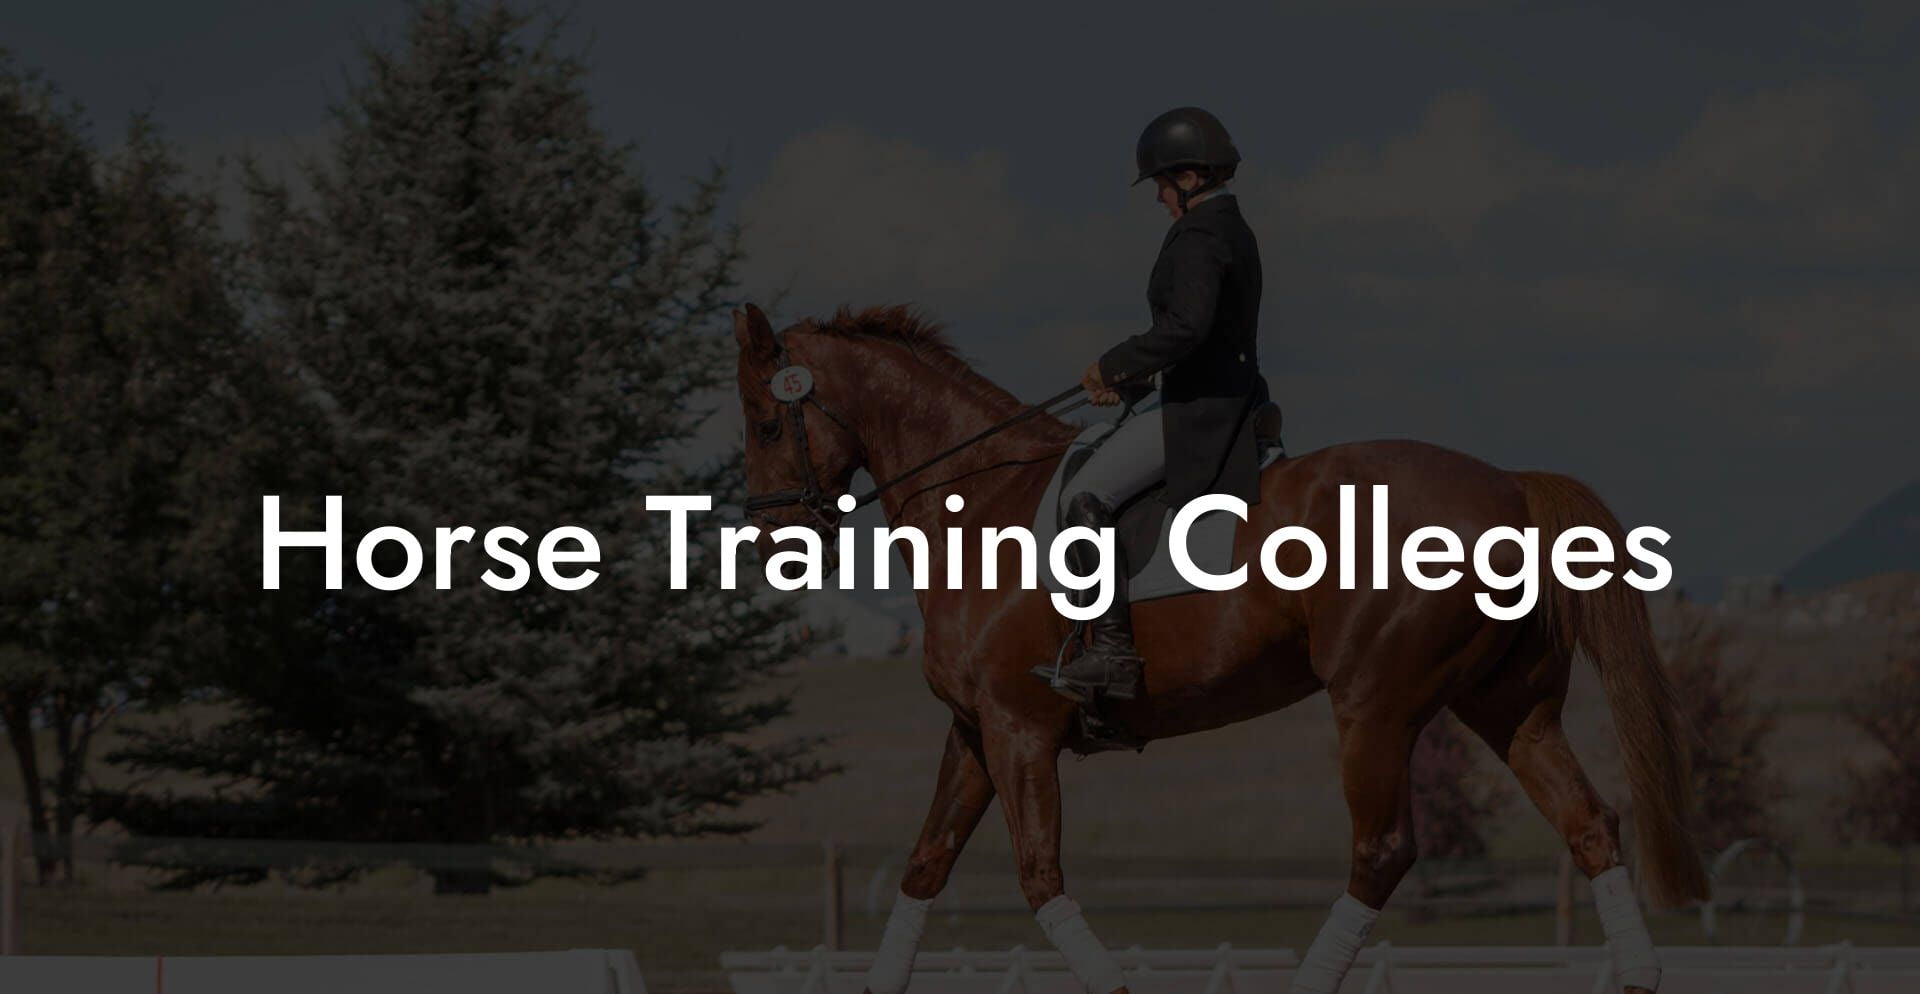 Horse Training Colleges